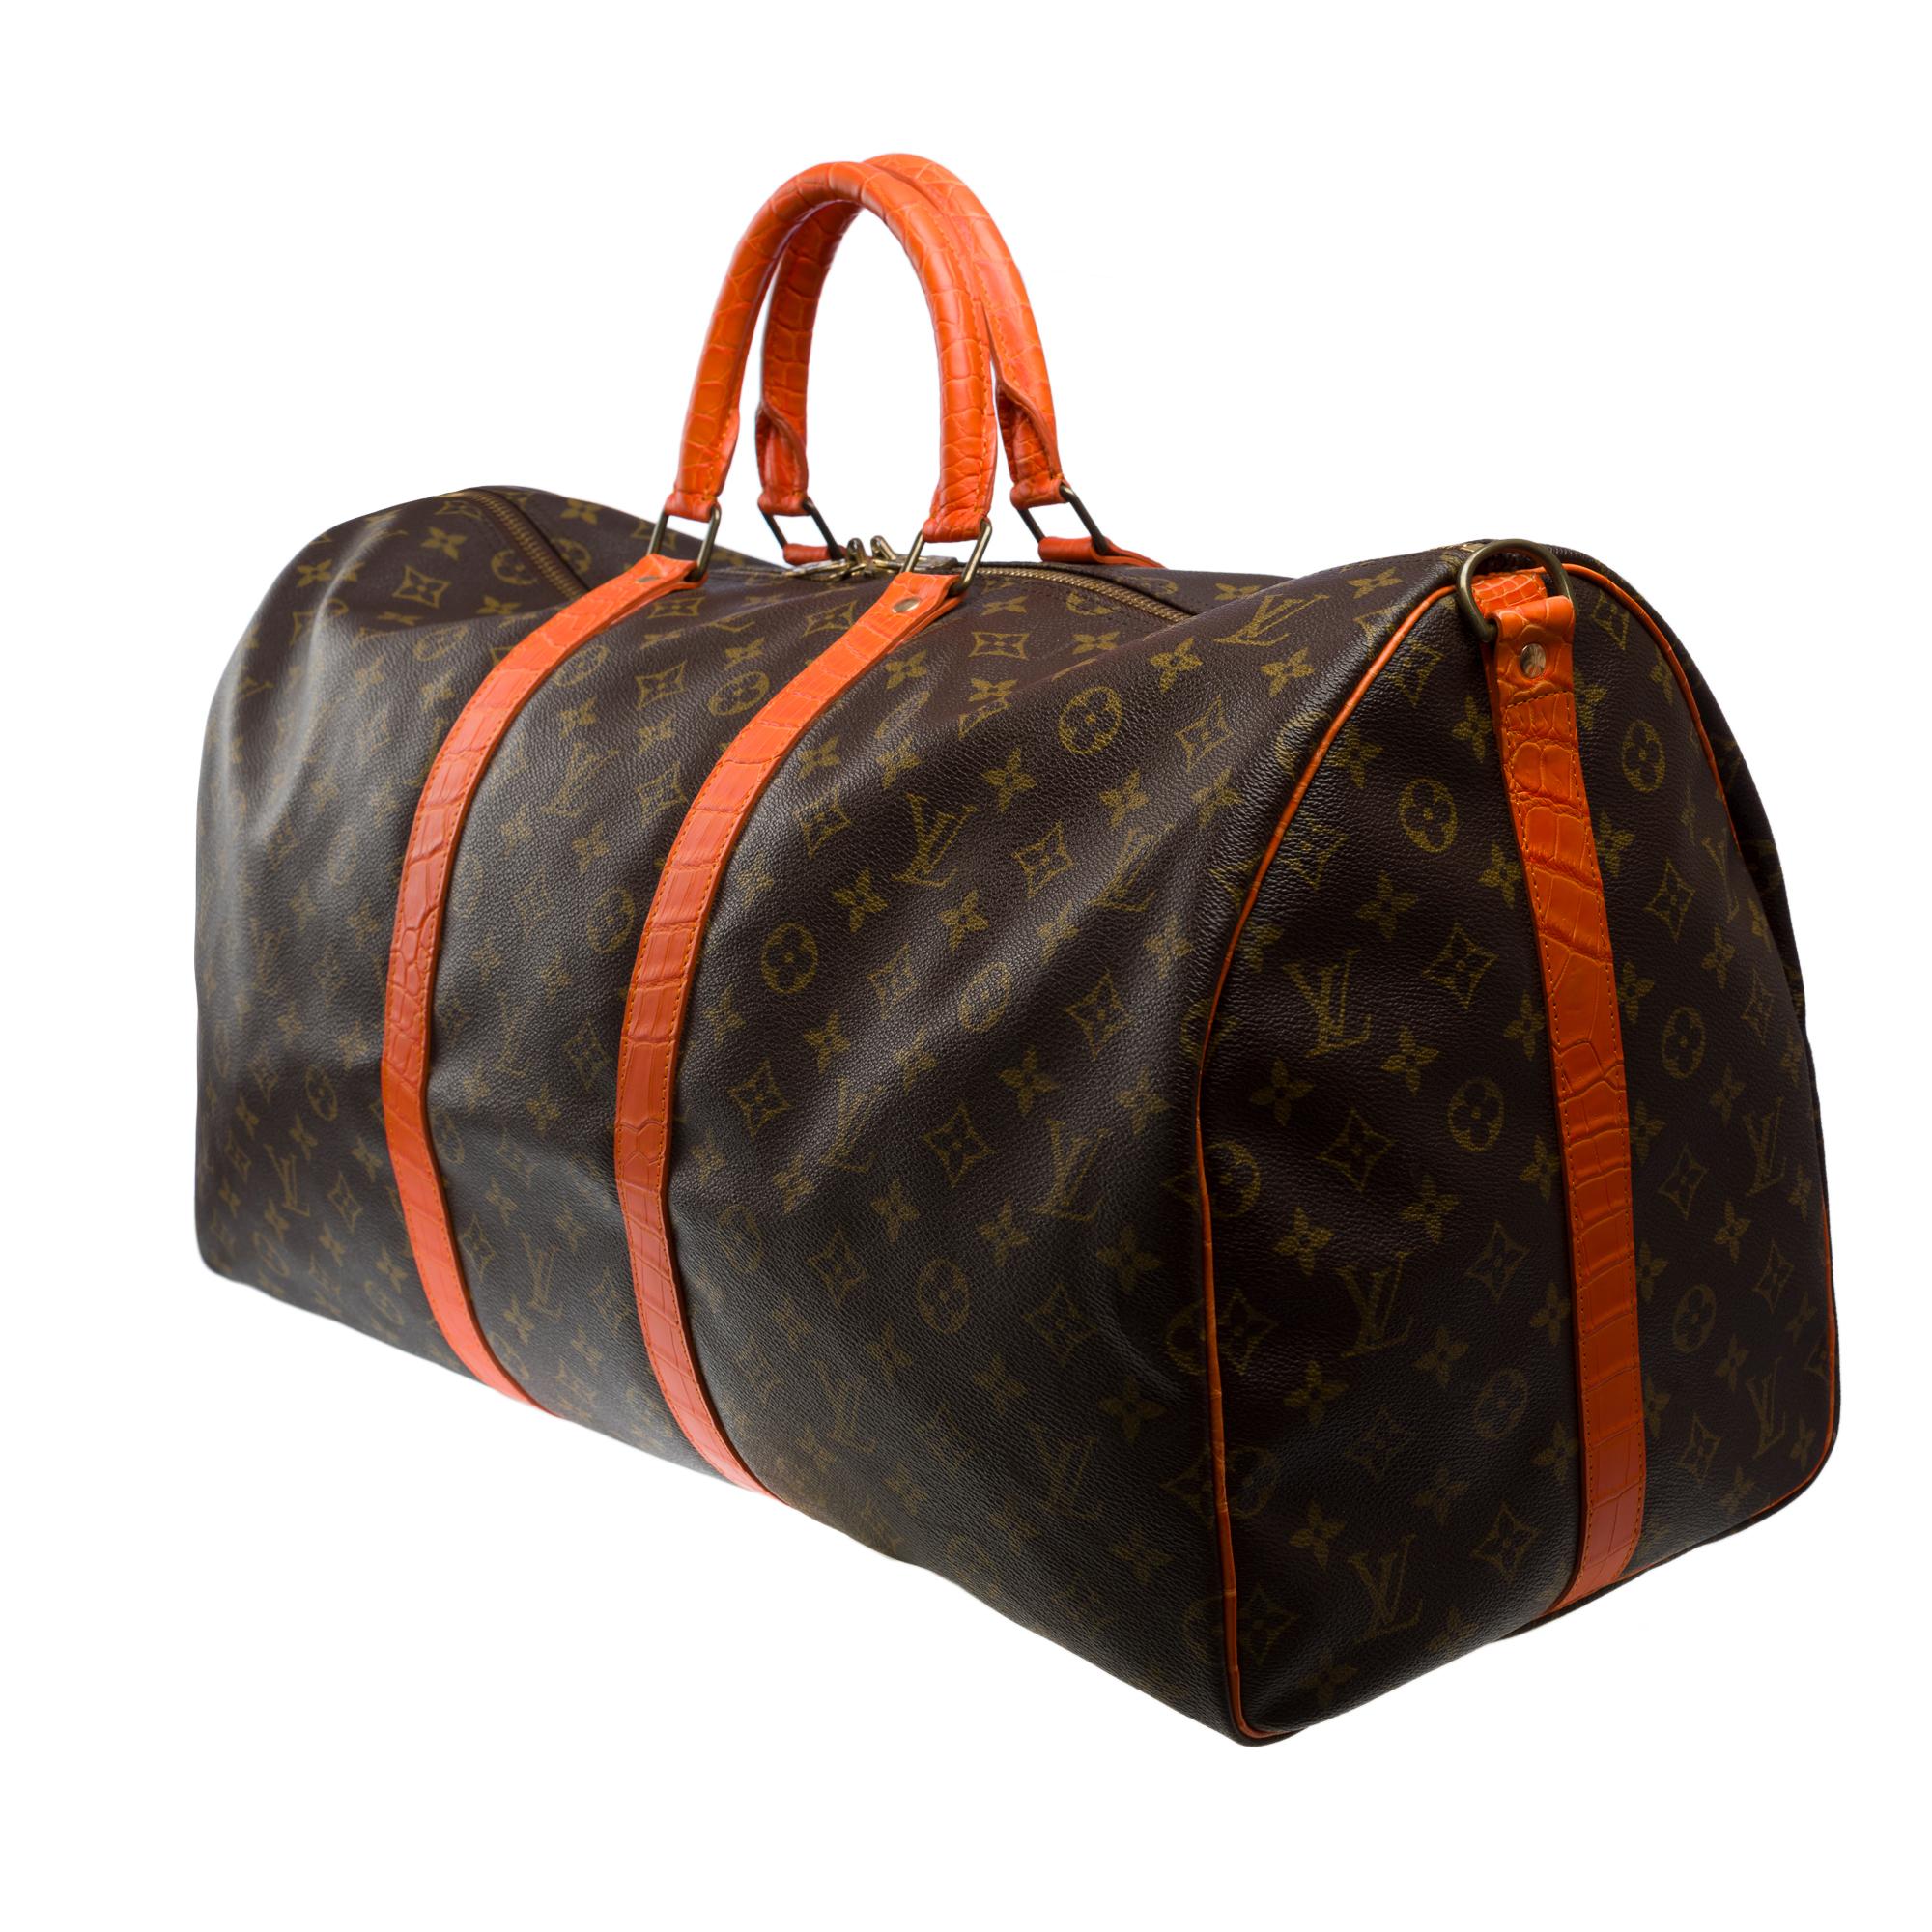 Maßgefertigte Louis Vuitton Keepall 55 Reisetasche mit orangefarbenem Krokodil-Armband für Damen oder Herren im Angebot